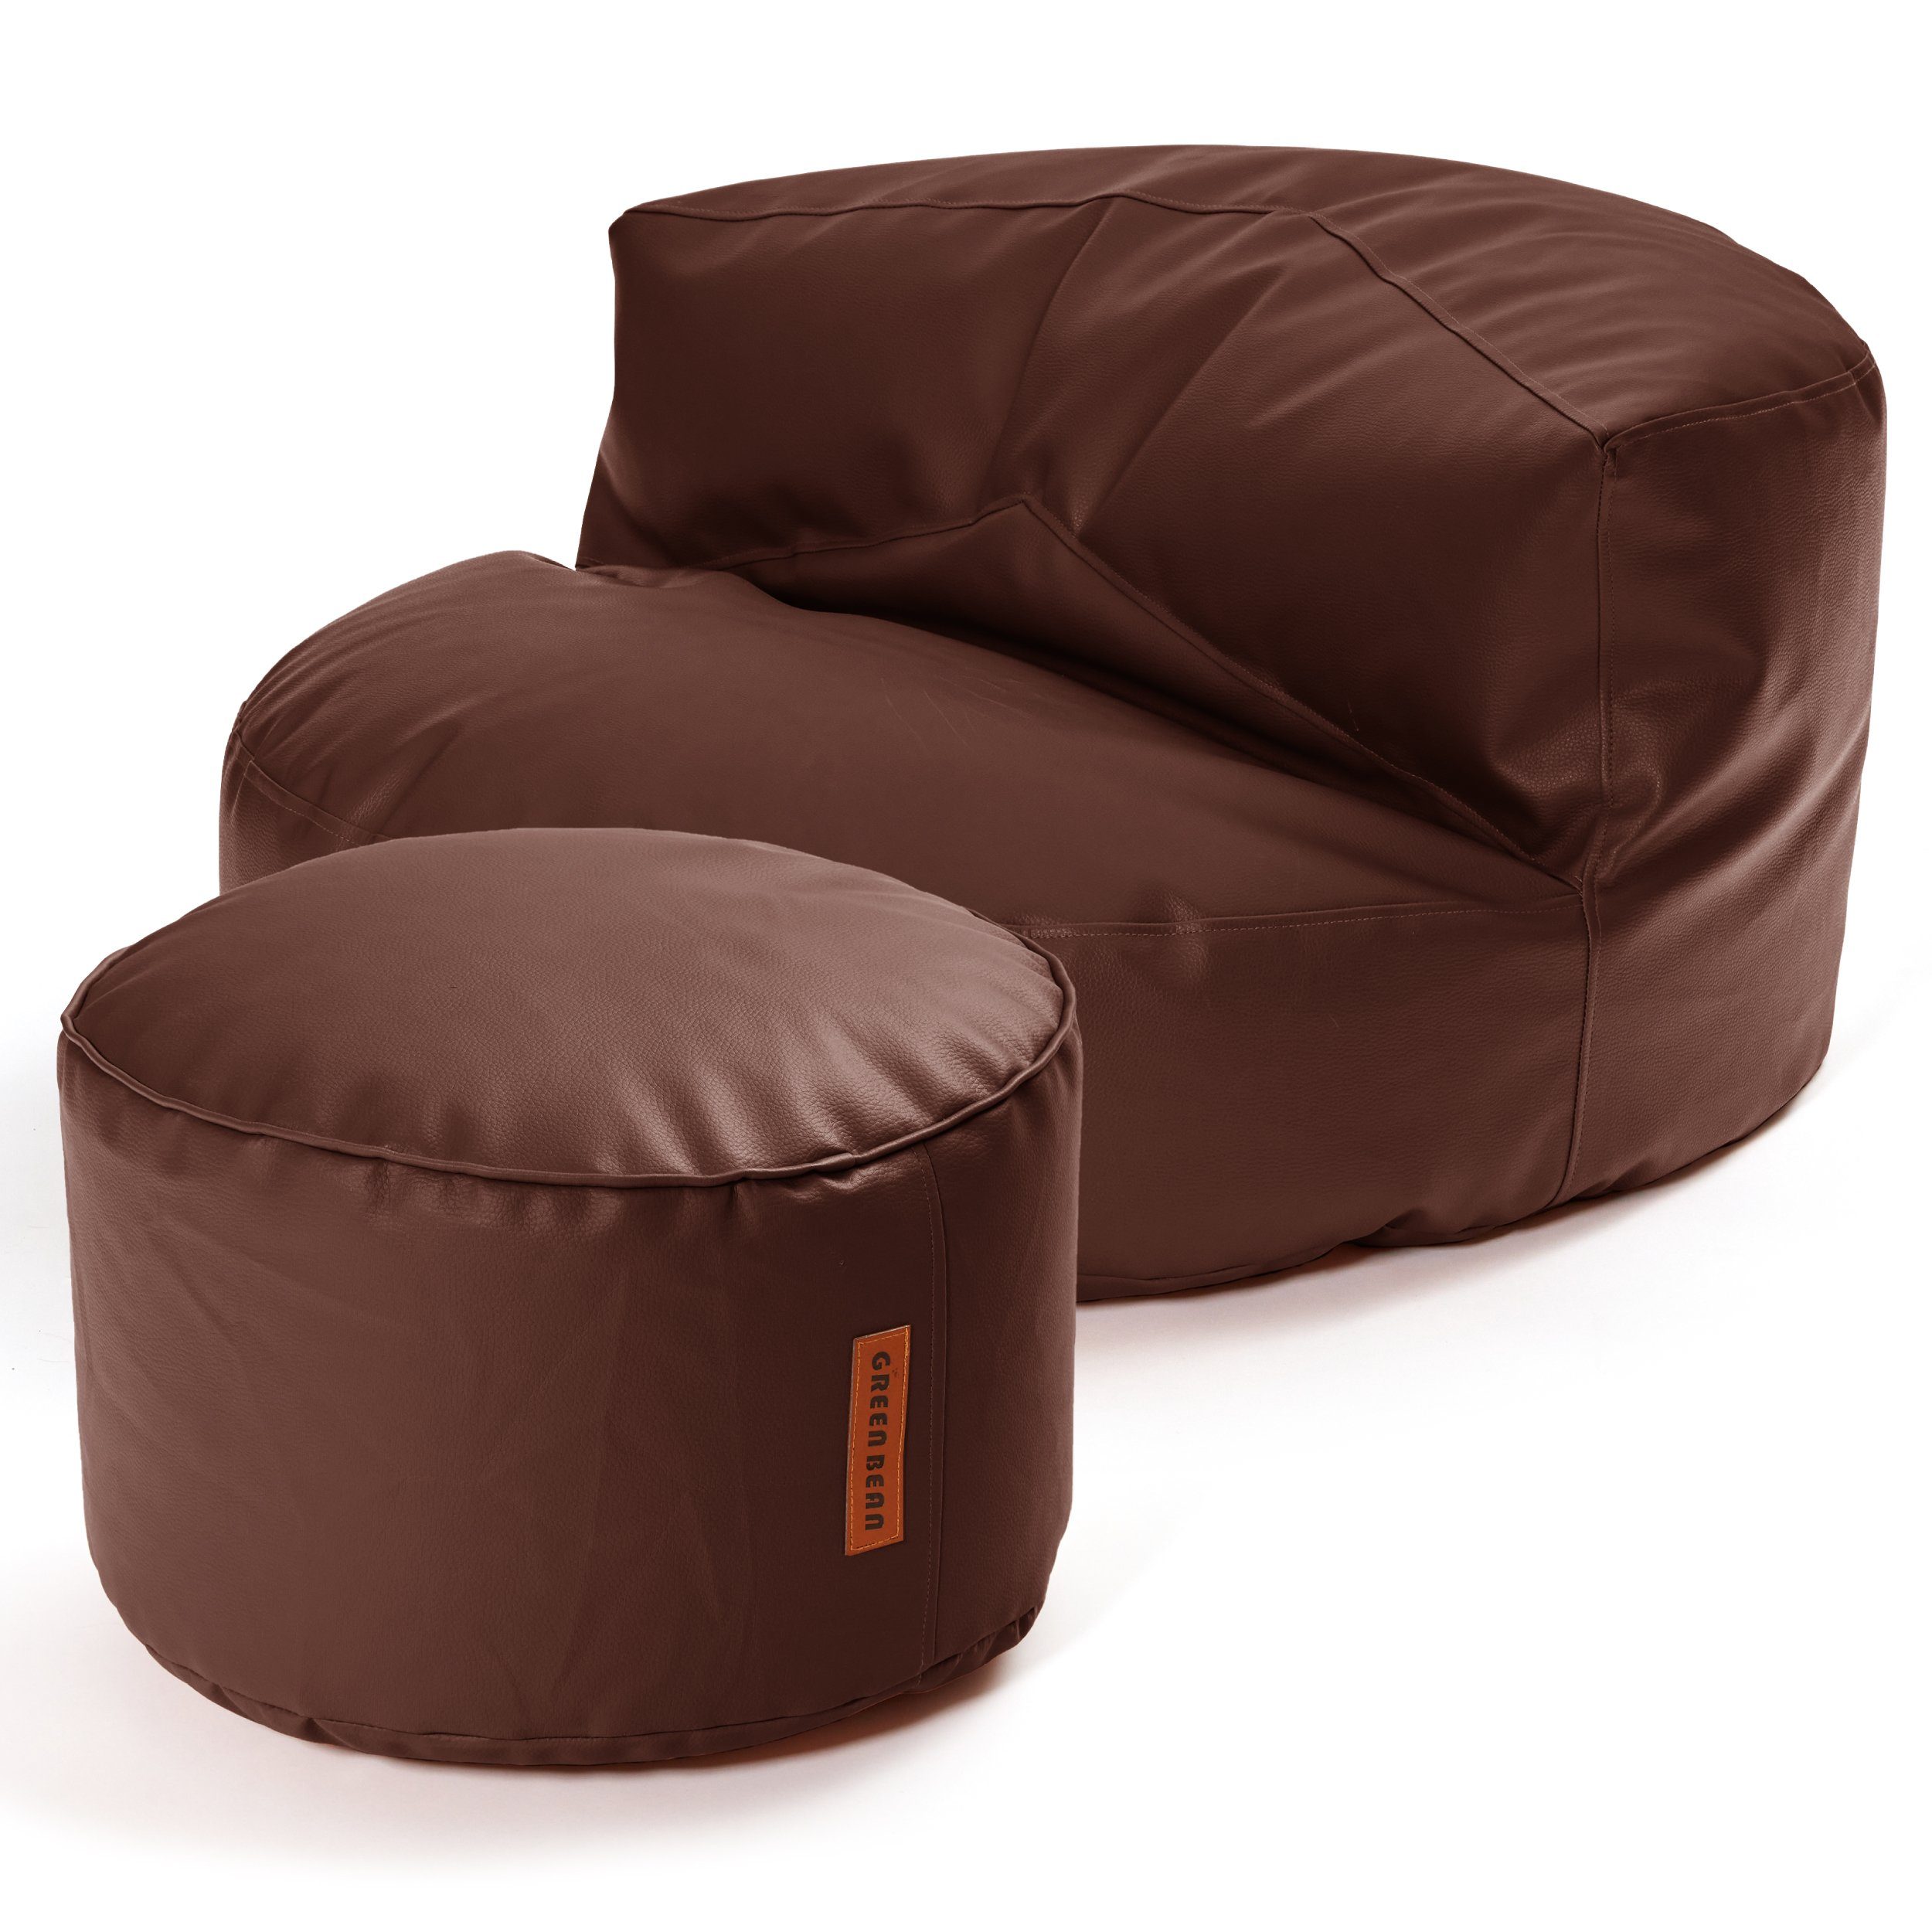 Green Bean Sitzsack Sofa + Pouf Sitzsack als Set aus Kunstleder, EPS Perlen Füllung ca. 90x45cm - Couch XXL Riesensitzsack Lounge Stay Dunkelbraun